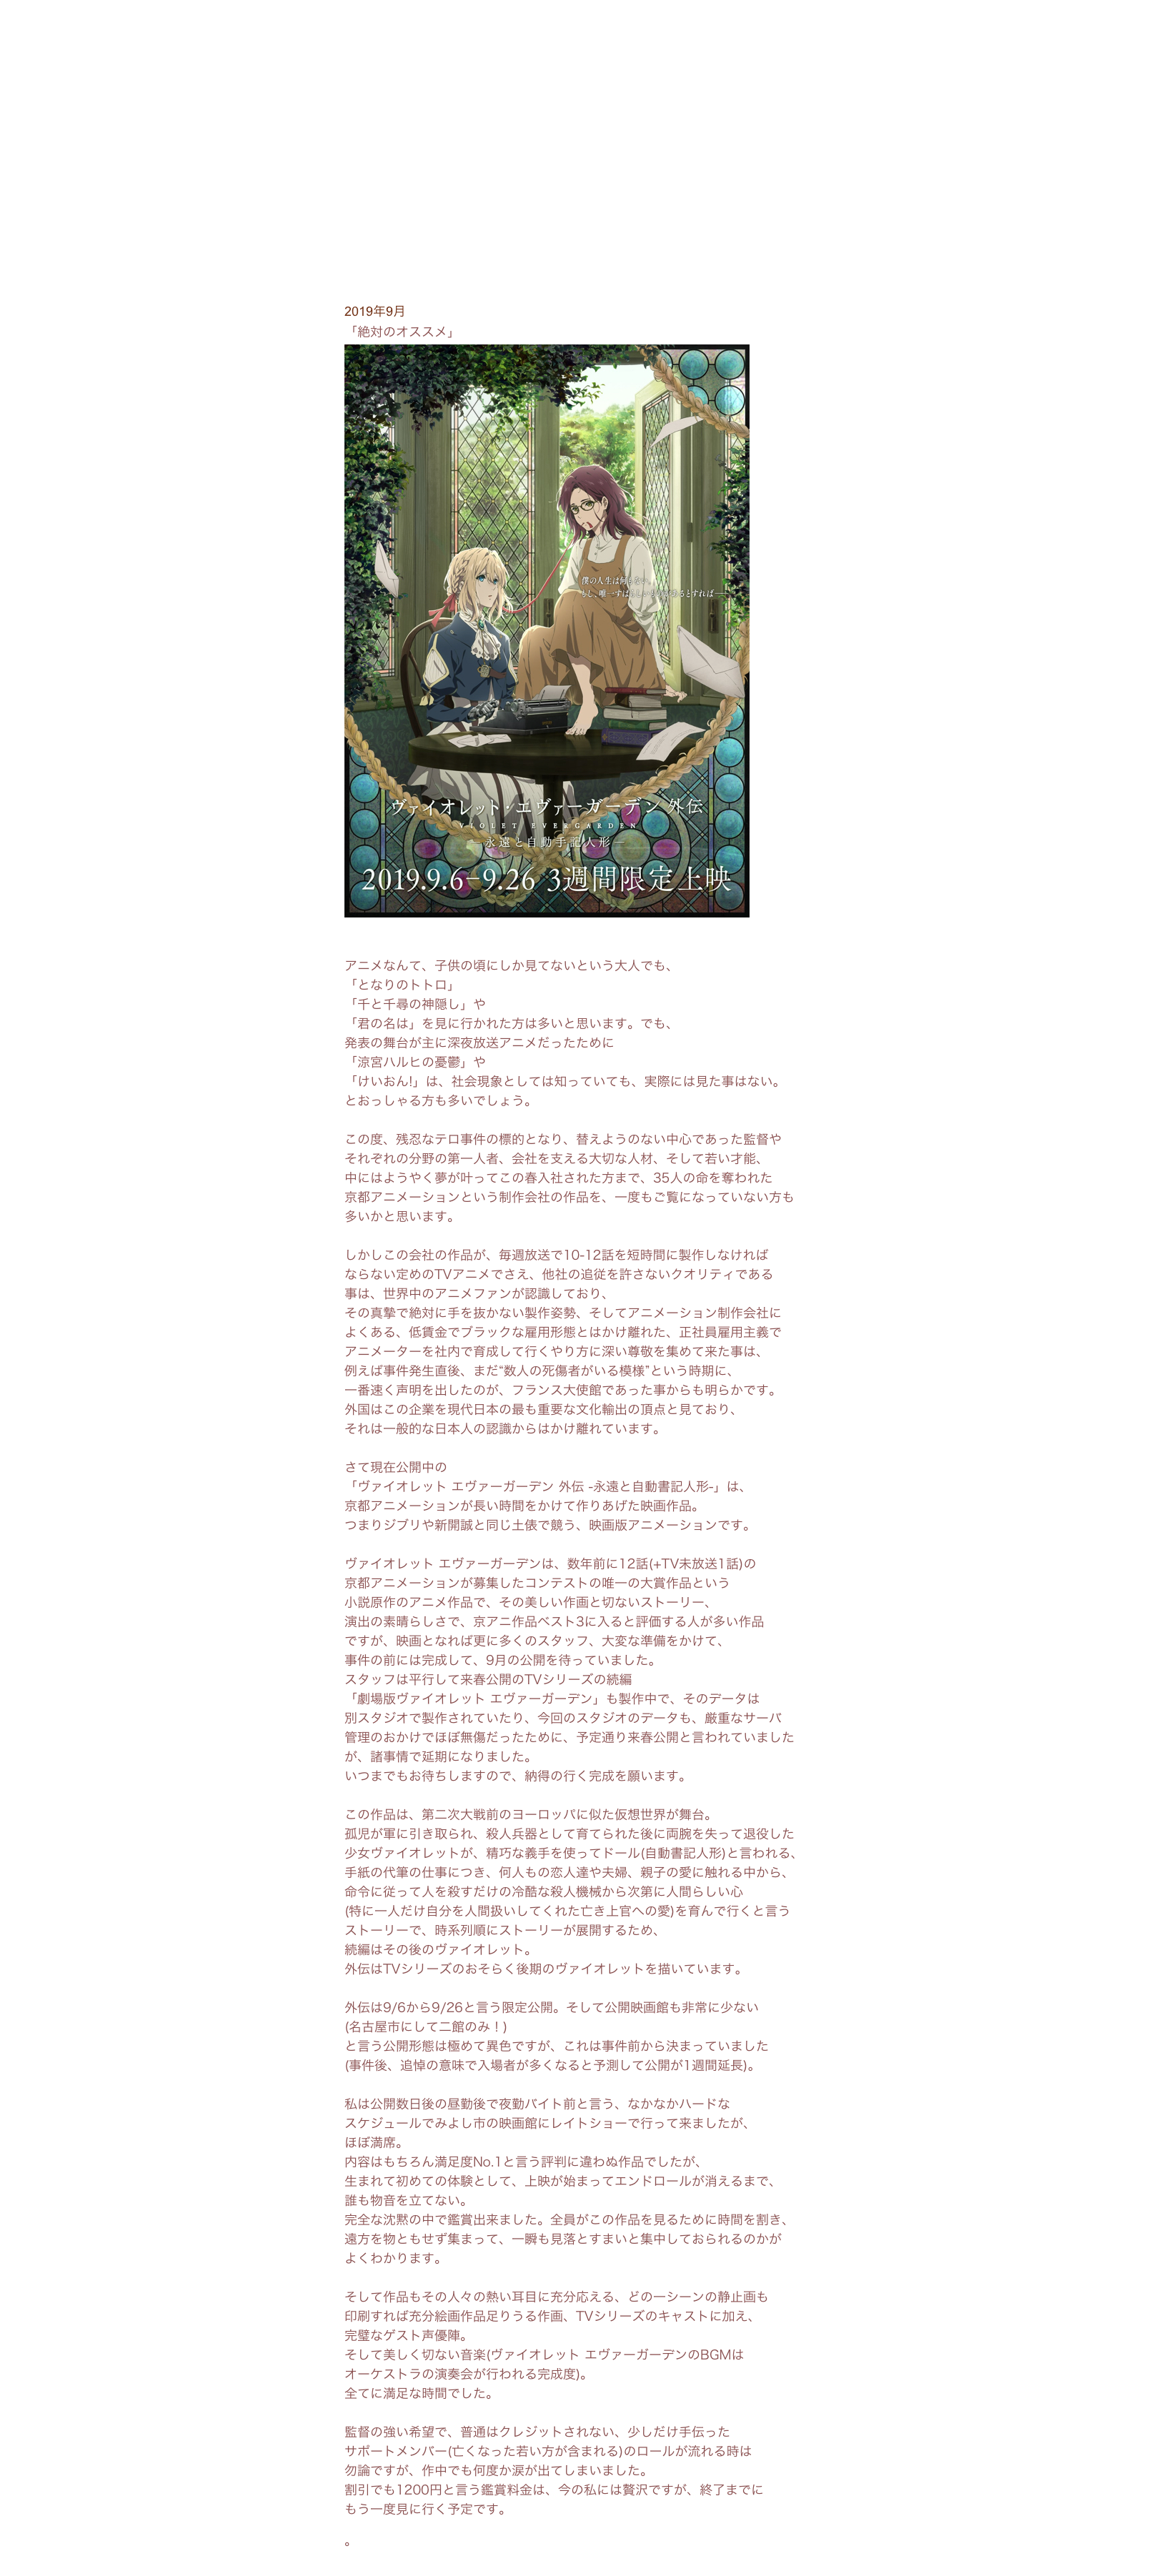 2019年9月
「絶対のオススメ」￼http://www.violet-evergarden.jp/sidestory/
アニメなんて、子供の頃にしか見てないという大人でも、「となりのトトロ」「千と千尋の神隠し」や「君の名は」を見に行かれた方は多いと思います。でも、発表の舞台が主に深夜放送アニメだったために「涼宮ハルヒの憂鬱」や「けいおん!」は、社会現象としては知っていても、実際には見た事はない。
とおっしゃる方も多いでしょう。この度、残忍なテロ事件の標的となり、替えようのない中心であった監督や
それぞれの分野の第一人者、会社を支える大切な人材、そして若い才能、
中にはようやく夢が叶ってこの春入社された方まで、35人の命を奪われた
京都アニメーションという制作会社の作品を、一度もご覧になっていない方も
多いかと思います。しかしこの会社の作品が、毎週放送で10-12話を短時間に製作しなければ
ならない定めのTVアニメでさえ、他社の追従を許さないクオリティである
事は、世界中のアニメファンが認識しており、
その真摯で絶対に手を抜かない製作姿勢、そしてアニメーション制作会社に
よくある、低賃金でブラックな雇用形態とはかけ離れた、正社員雇用主義で
アニメーターを社内で育成して行くやり方に深い尊敬を集めて来た事は、
例えば事件発生直後、まだ“数人の死傷者がいる模様”という時期に、
一番速く声明を出したのが、フランス大使館であった事からも明らかです。
外国はこの企業を現代日本の最も重要な文化輸出の頂点と見ており、
それは一般的な日本人の認識からはかけ離れています。さて現在公開中の「ヴァイオレット エヴァーガーデン 外伝 -永遠と自動書記人形-」は、
京都アニメーションが長い時間をかけて作りあげた映画作品。
つまりジブリや新開誠と同じ土俵で競う、映画版アニメーションです。ヴァイオレット エヴァーガーデンは、数年前に12話(+TV未放送1話)の
京都アニメーションが募集したコンテストの唯一の大賞作品という
小説原作のアニメ作品で、その美しい作画と切ないストーリー、
演出の素晴らしさで、京アニ作品ベスト3に入ると評価する人が多い作品
ですが、映画となれば更に多くのスタッフ、大変な準備をかけて、
事件の前には完成して、9月の公開を待っていました。
スタッフは平行して来春公開のTVシリーズの続編「劇場版ヴァイオレット エヴァーガーデン」も製作中で、そのデータは
別スタジオで製作されていたり、今回のスタジオのデータも、厳重なサーバ
管理のおかけでほぼ無傷だったために、予定通り来春公開と言われていました
が、諸事情で延期になりました。
いつまでもお待ちしますので、納得の行く完成を願います。この作品は、第二次大戦前のヨーロッパに似た仮想世界が舞台。
孤児が軍に引き取られ、殺人兵器として育てられた後に両腕を失って退役した
少女ヴァイオレットが、精巧な義手を使ってドール(自動書記人形)と言われる、
手紙の代筆の仕事につき、何人もの恋人達や夫婦、親子の愛に触れる中から、
命令に従って人を殺すだけの冷酷な殺人機械から次第に人間らしい心
(特に一人だけ自分を人間扱いしてくれた亡き上官への愛)を育んで行くと言う
ストーリーで、時系列順にストーリーが展開するため、
続編はその後のヴァイオレット。外伝はTVシリーズのおそらく後期のヴァイオレットを描いています。外伝は9/6から9/26と言う限定公開。そして公開映画館も非常に少ない
(名古屋市にして二館のみ！)と言う公開形態は極めて異色ですが、これは事件前から決まっていました
(事件後、追悼の意味で入場者が多くなると予測して公開が1週間延長)。私は公開数日後の昼勤後で夜勤バイト前と言う、なかなかハードな
スケジュールでみよし市の映画館にレイトショーで行って来ましたが、ほぼ満席。内容はもちろん満足度No.1と言う評判に違わぬ作品でしたが、
生まれて初めての体験として、上映が始まってエンドロールが消えるまで、
誰も物音を立てない。完全な沈黙の中で鑑賞出来ました。全員がこの作品を見るために時間を割き、
遠方を物ともせず集まって、一瞬も見落とすまいと集中しておられるのかが
よくわかります。そして作品もその人々の熱い耳目に充分応える、どの一シーンの静止画も
印刷すれば充分絵画作品足りうる作画、TVシリーズのキャストに加え、
完璧なゲスト声優陣。
そして美しく切ない音楽(ヴァイオレット エヴァーガーデンのBGMは
オーケストラの演奏会が行われる完成度)。全てに満足な時間でした。監督の強い希望で、普通はクレジットされない、少しだけ手伝った
サポートメンバー(亡くなった若い方が含まれる)のロールが流れる時は
勿論ですが、作中でも何度か涙が出てしまいました。割引でも1200円と言う鑑賞料金は、今の私には贅沢ですが、終了までに
もう一度見に行く予定です。

。日常コラムINDEXに戻る
